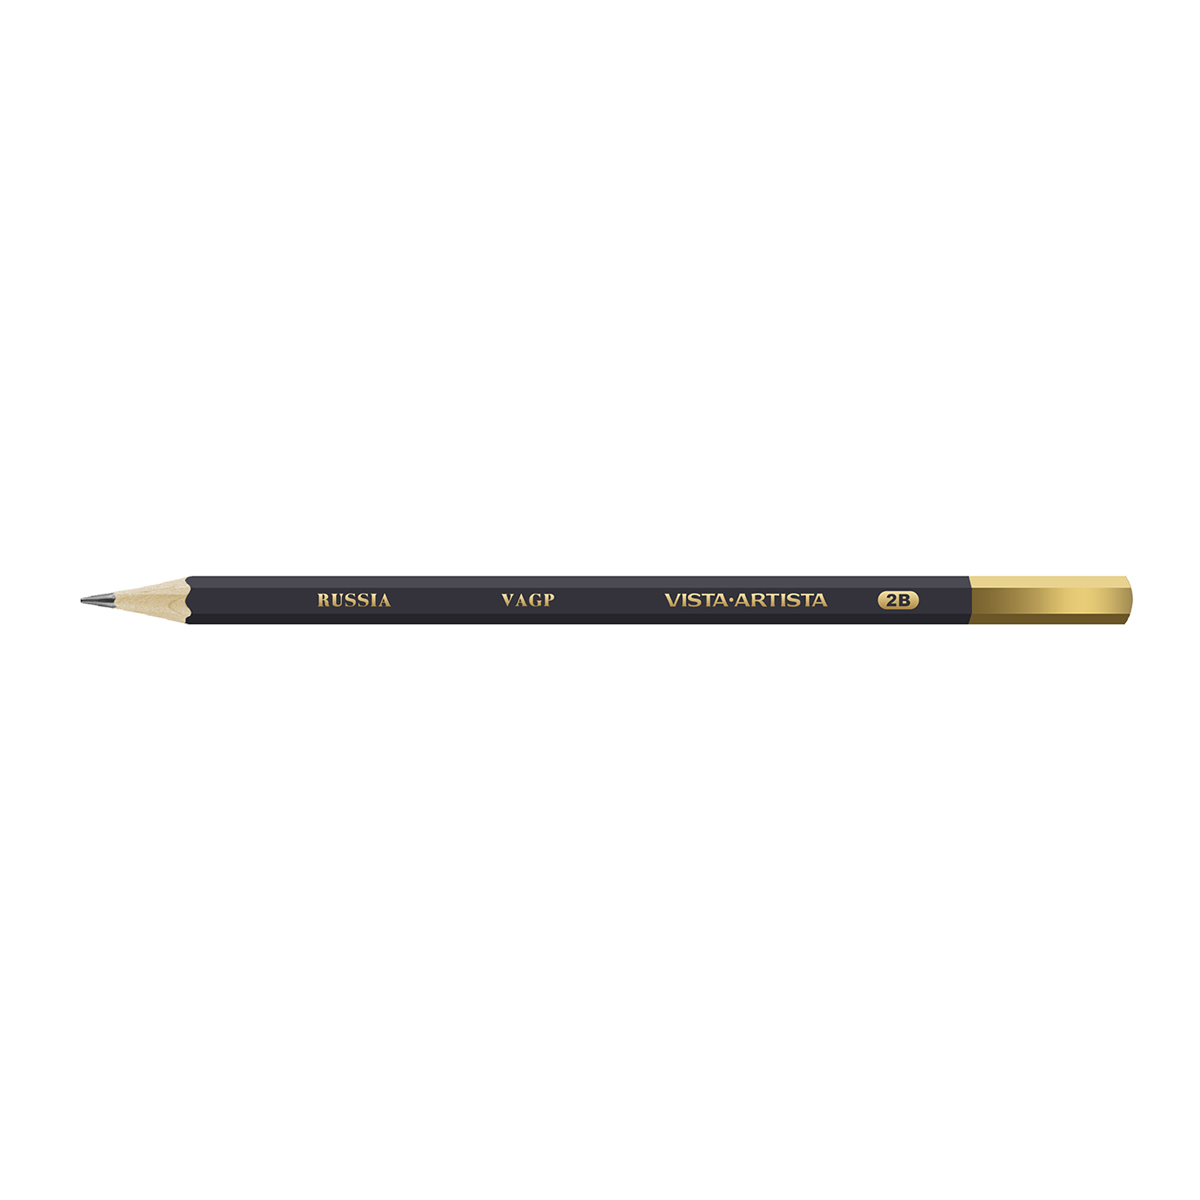 VISTA-ARTISTA VAGP Чернографитный карандаш заточенный 2М (2B) . Фото 1.